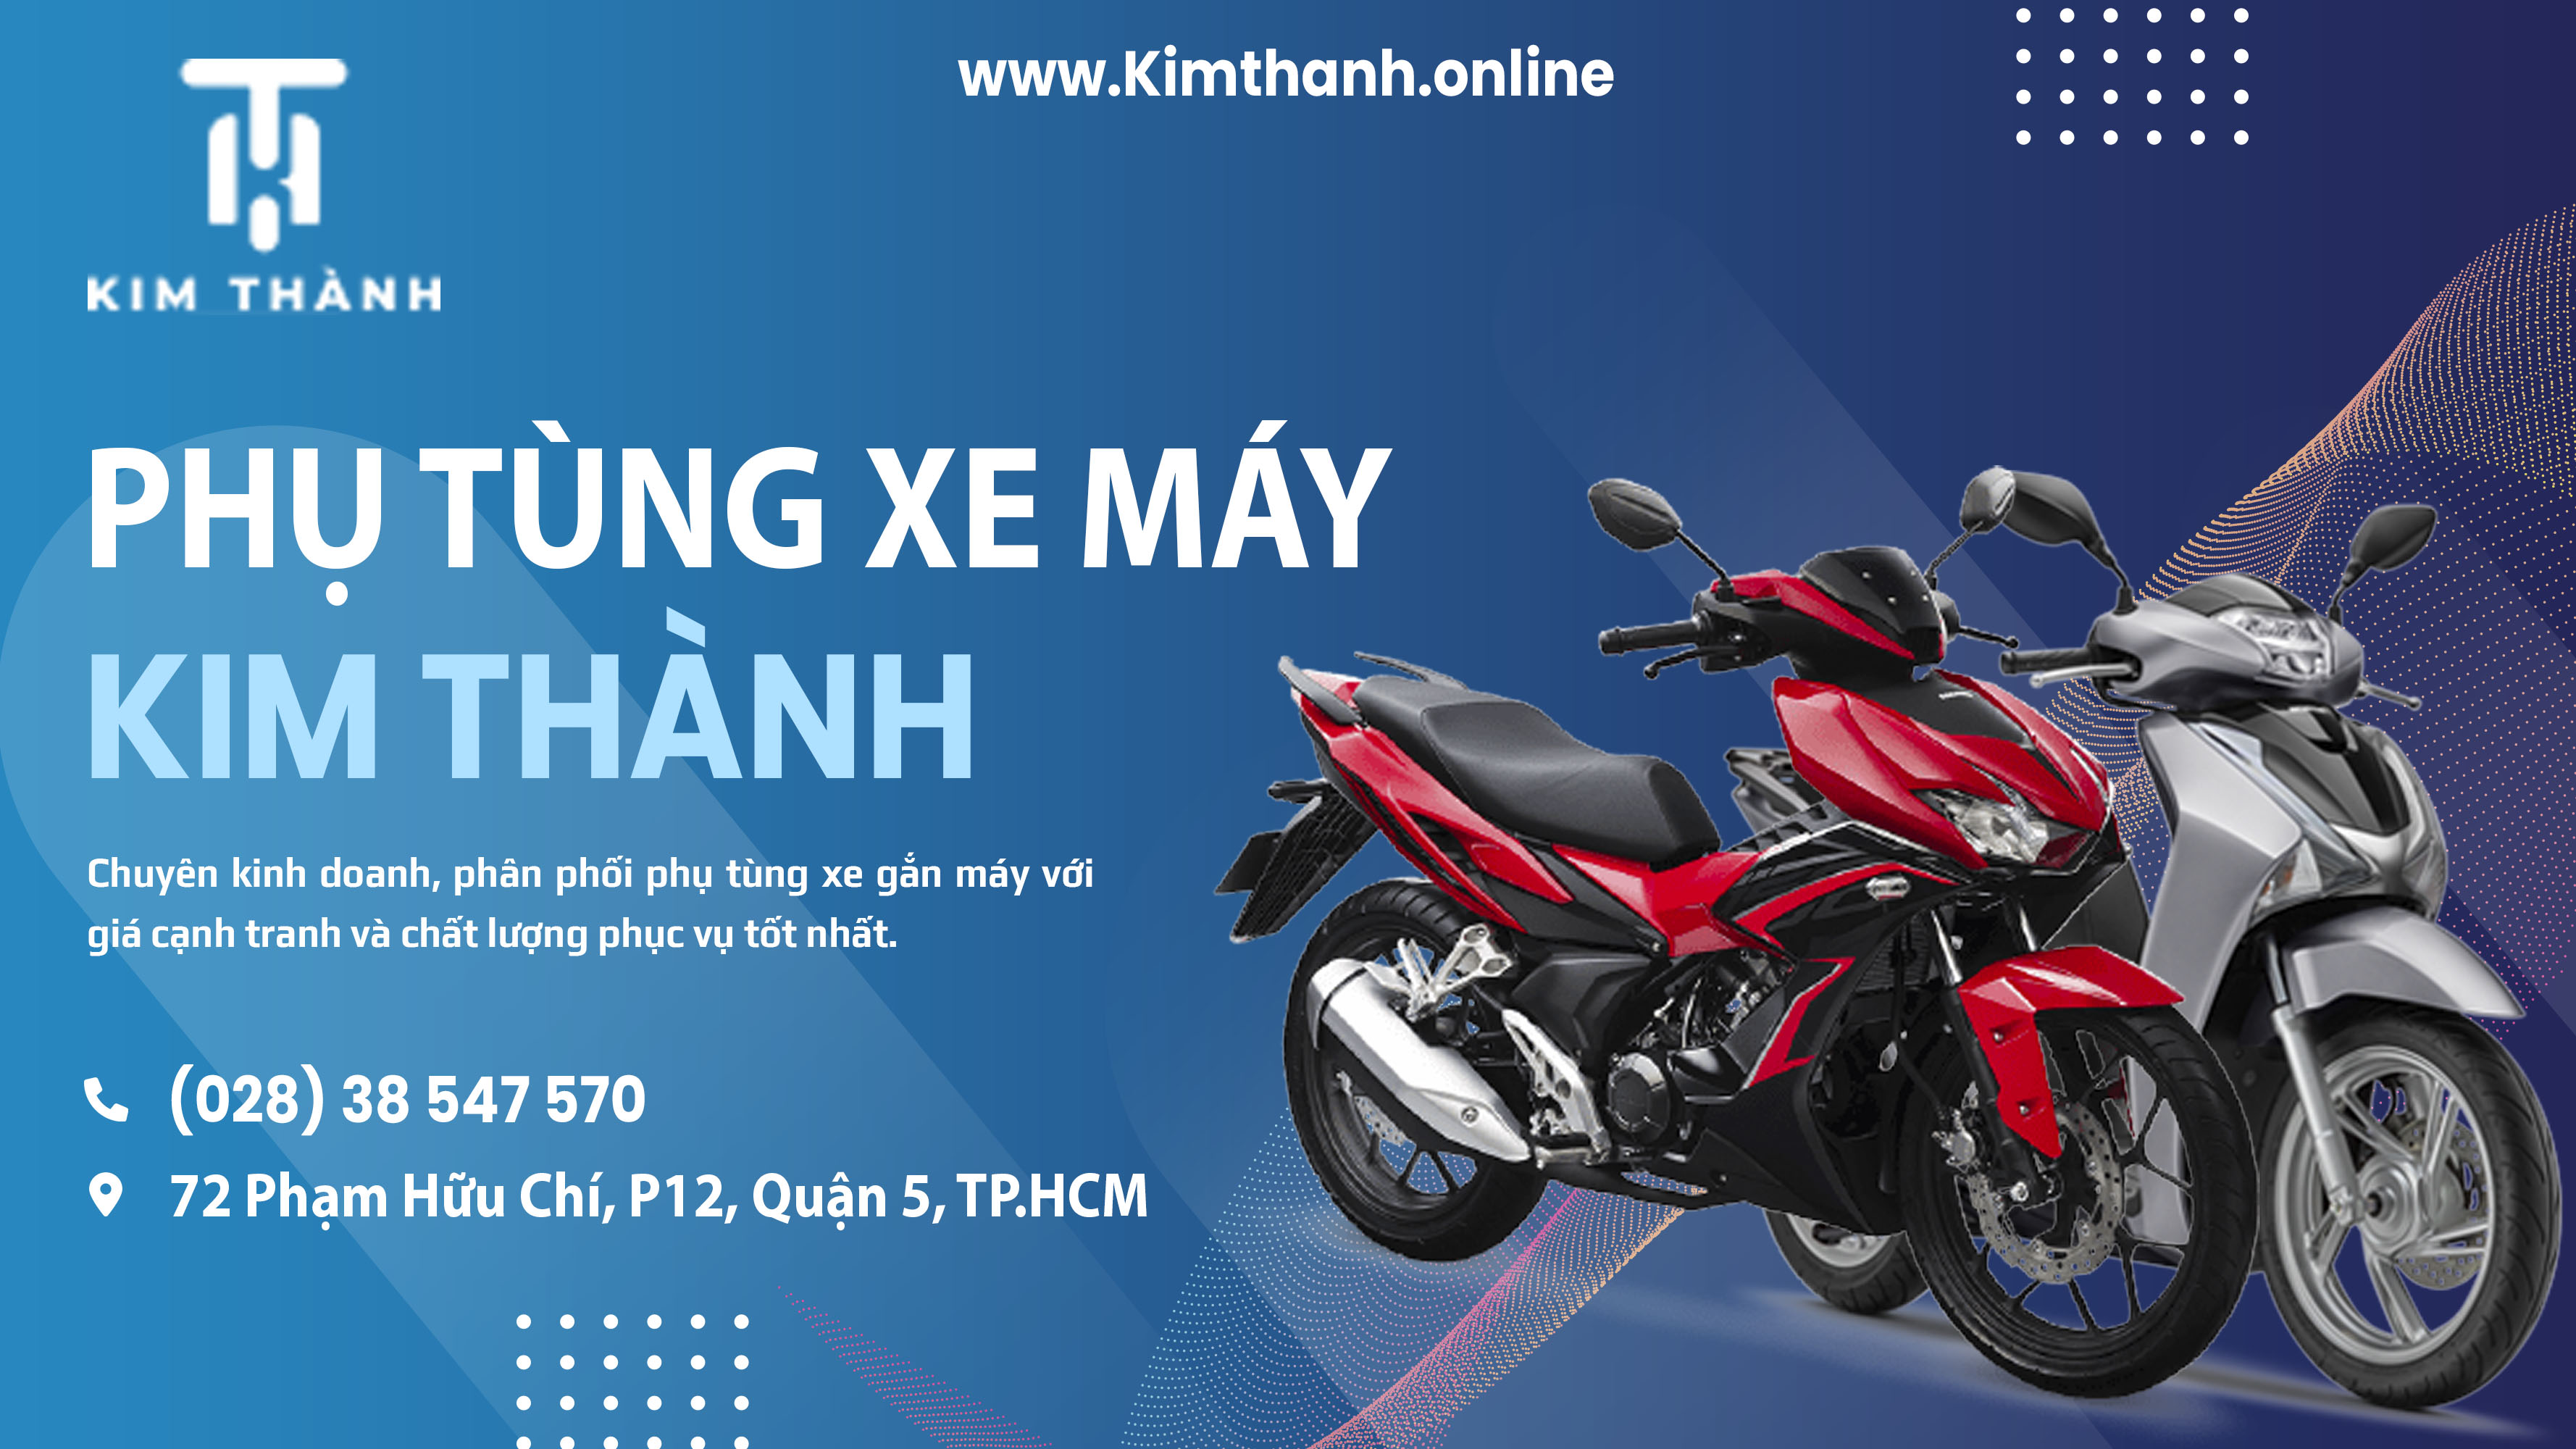 Kimthanh.online chuyên cung cấp các phụ kiên mua bán linh kiện xe máy chính hãng